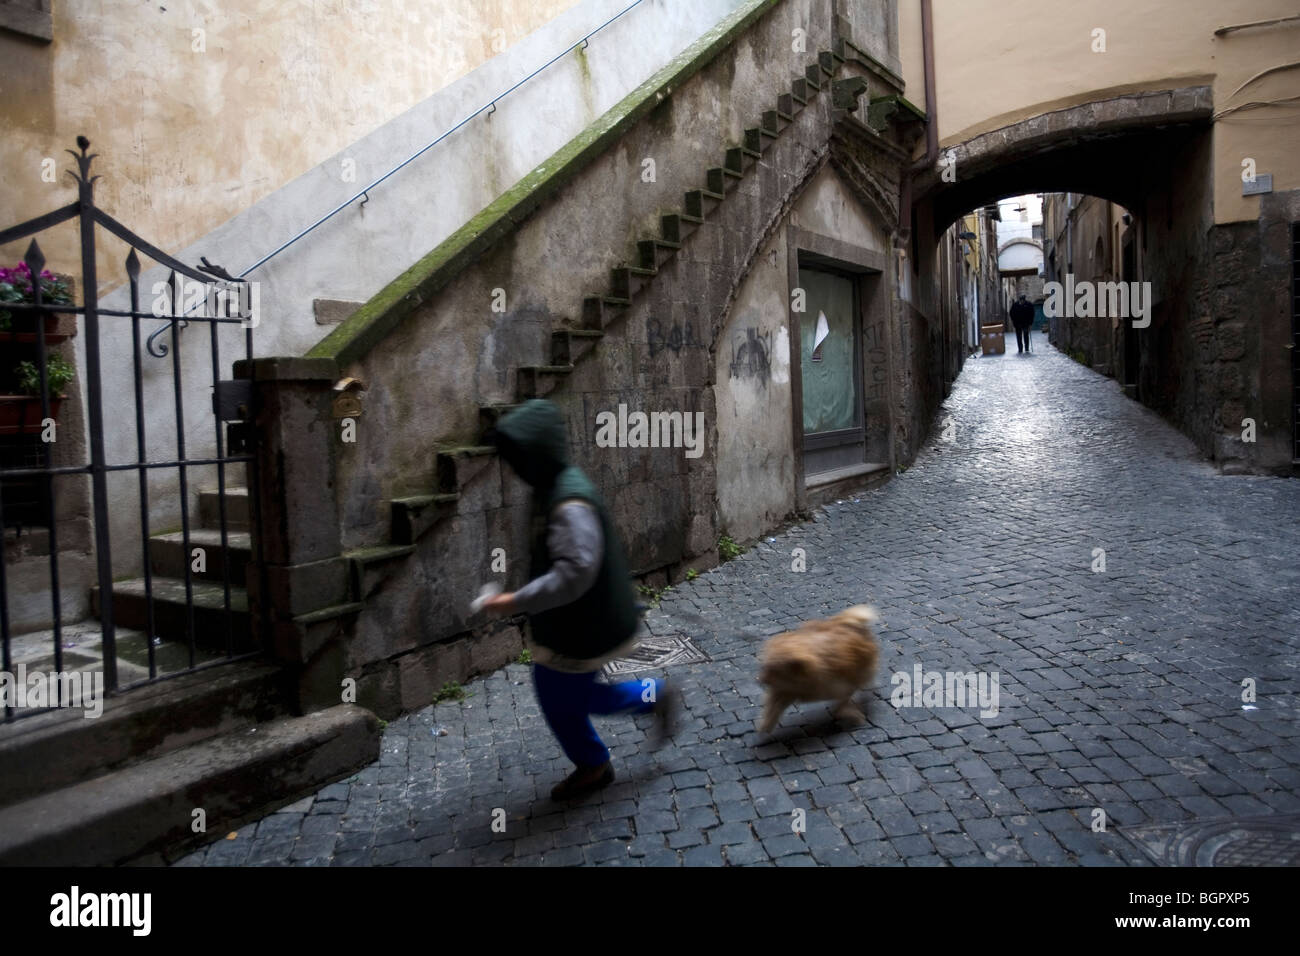 Pequeño niño corriendo con su perro en un callejón, Viterbo, Lacio, Italia. Foto de stock